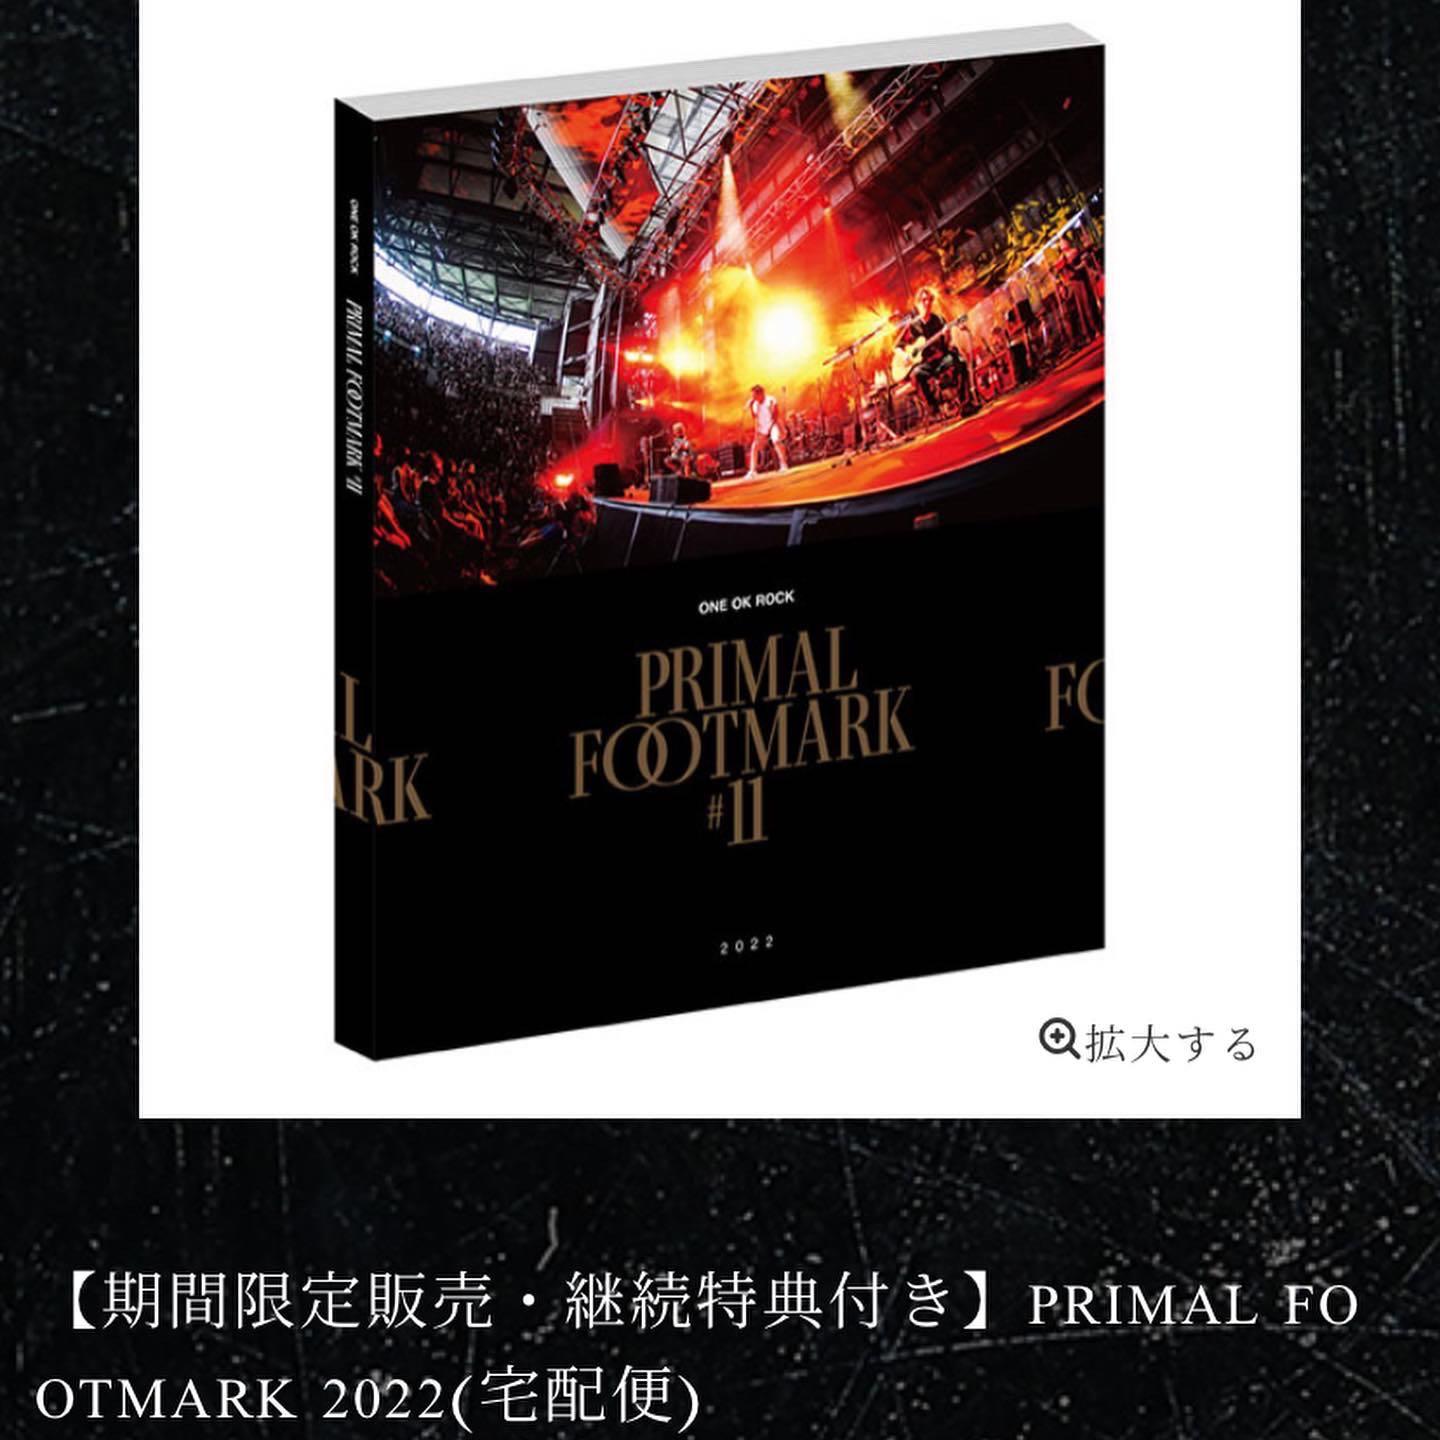 激安な ONE OK ROCK primal footmark #12 ワンオク